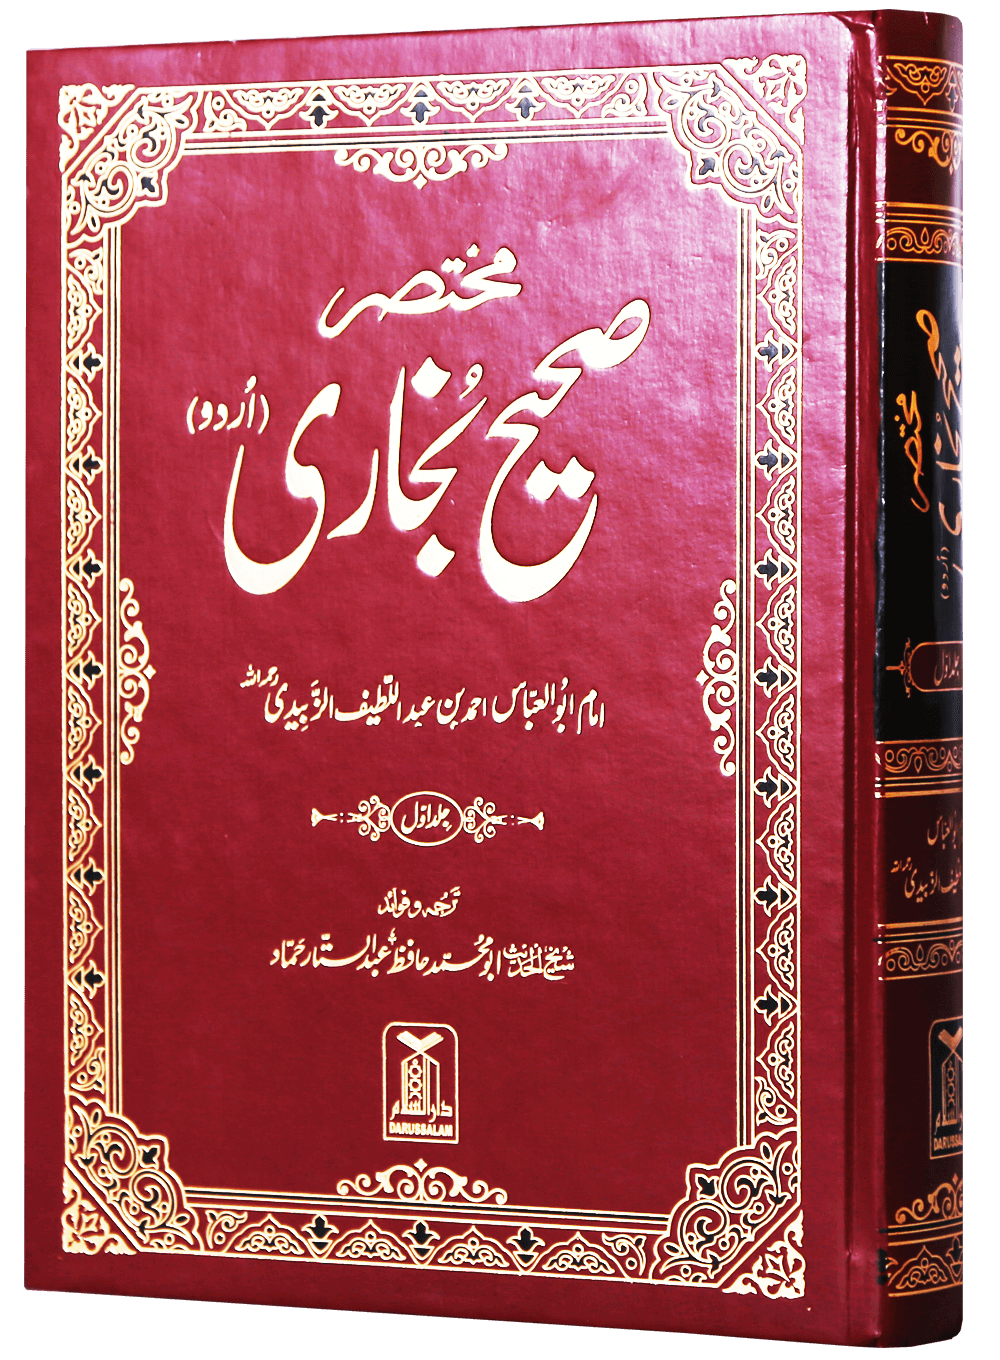 02-mukhtasir-sahih-al-bukhari-2-vols